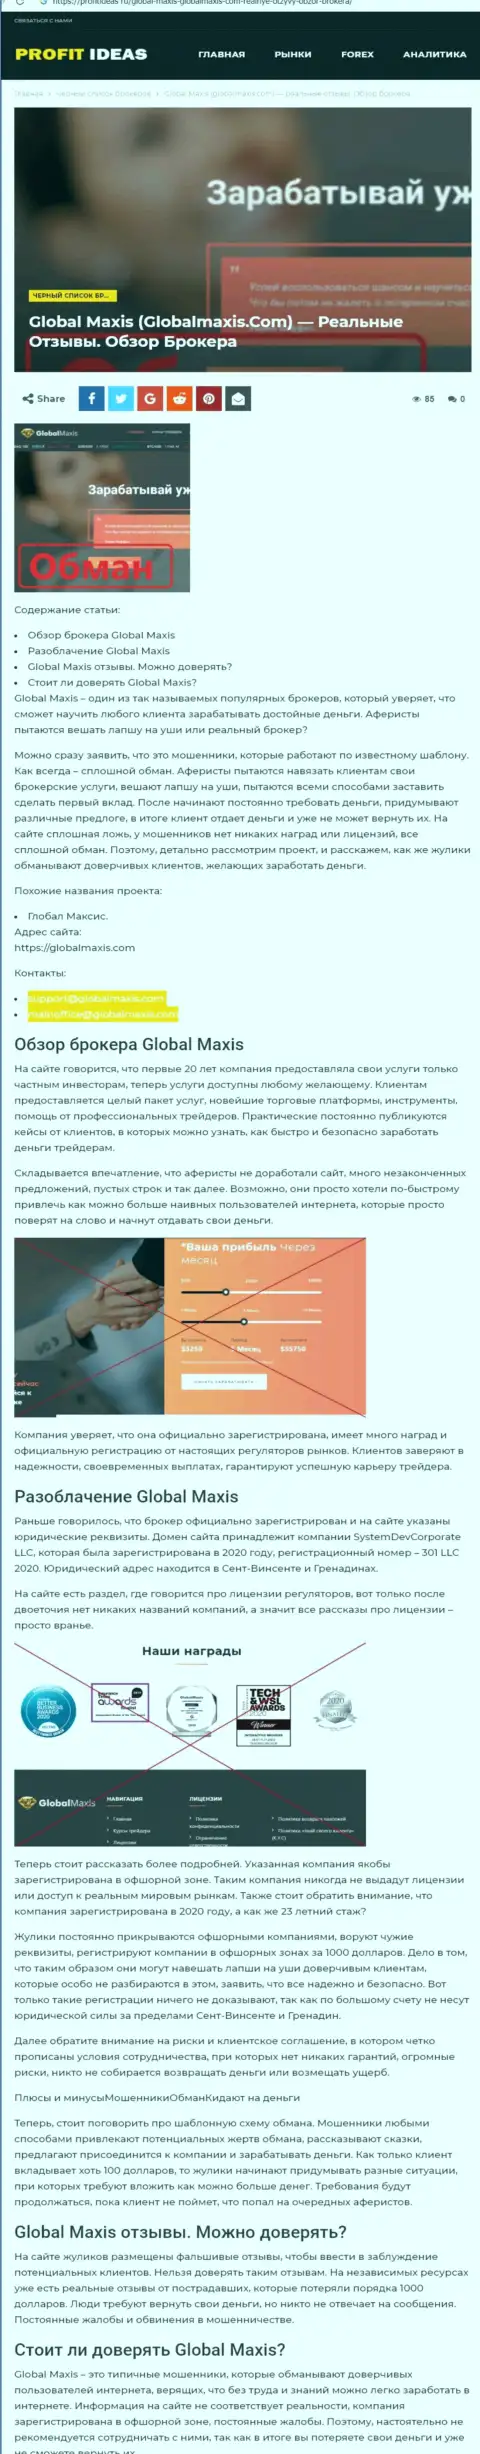 GlobalMaxis Com - internet-мошенники, которых надо обходить за версту (обзор)